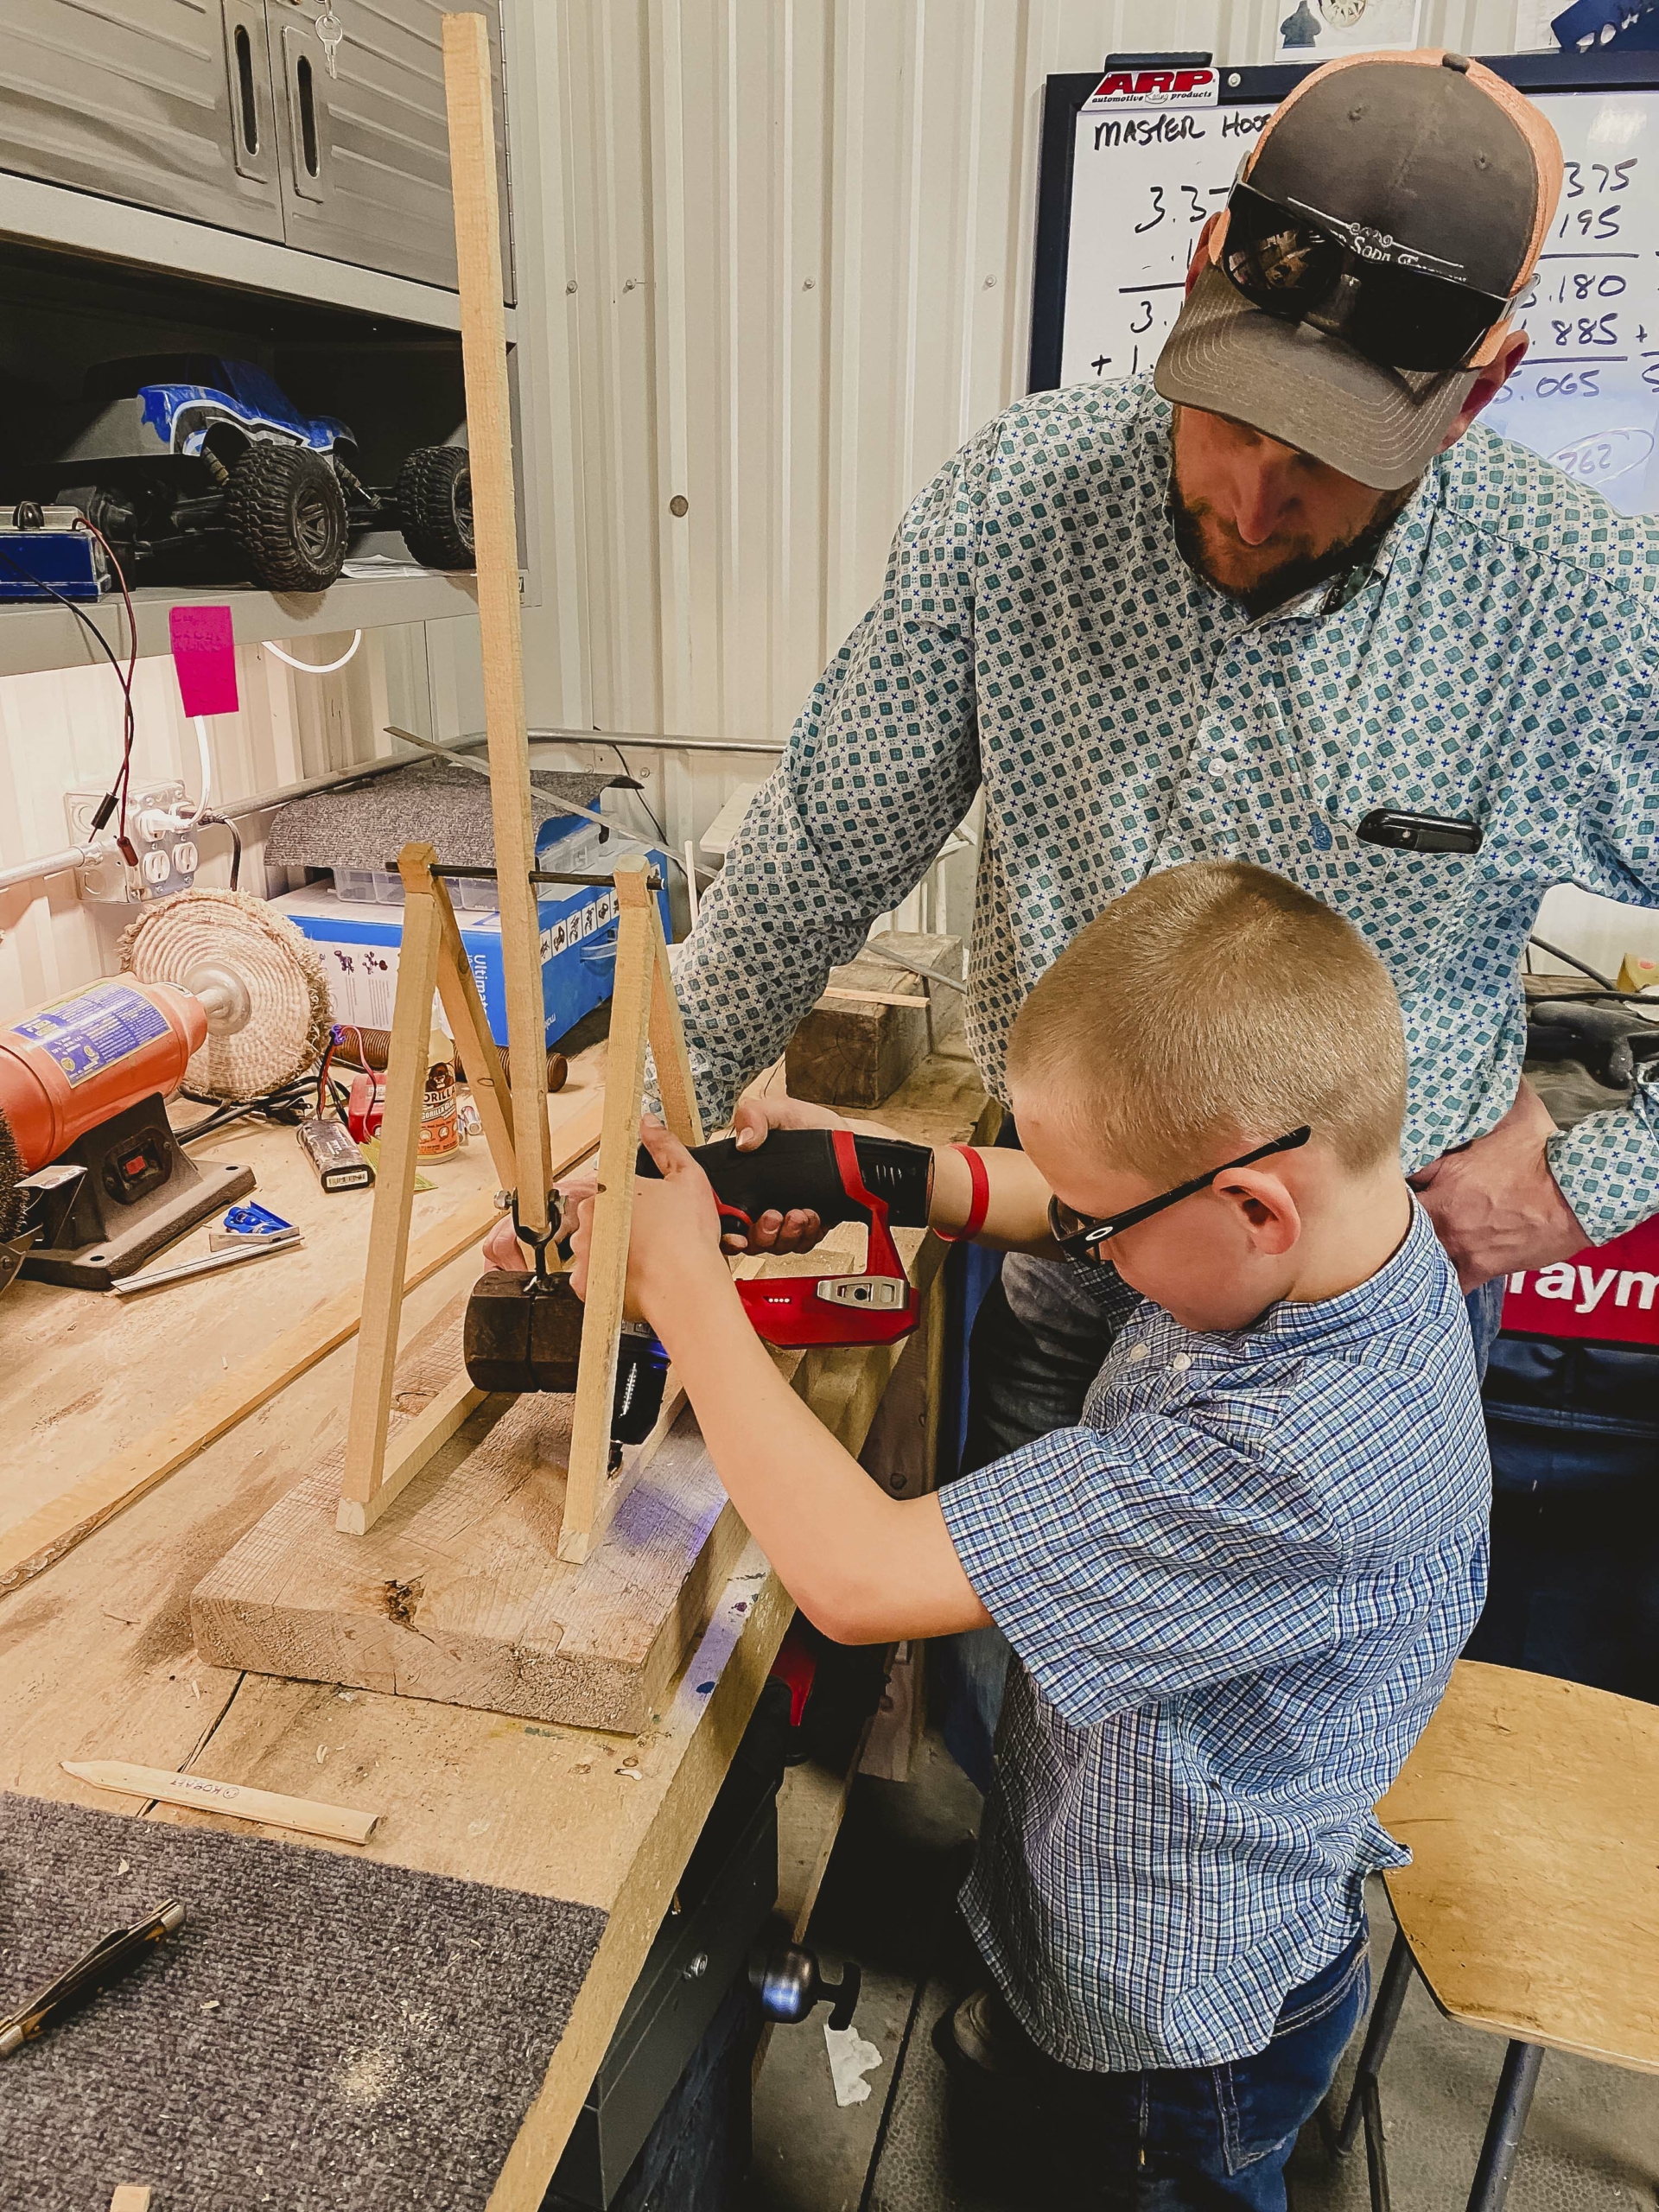 Bé Bridger, 10 tuổi, yêu thích sáng tạo mọi thứ. Gia đình gọi cậu là một thợ xây nhỏ, người có nhiều ý tưởng sáng tạo và rất hiếu kỳ. (Ảnh: Đăng dưới sự cho phép của cô Jill Winger)